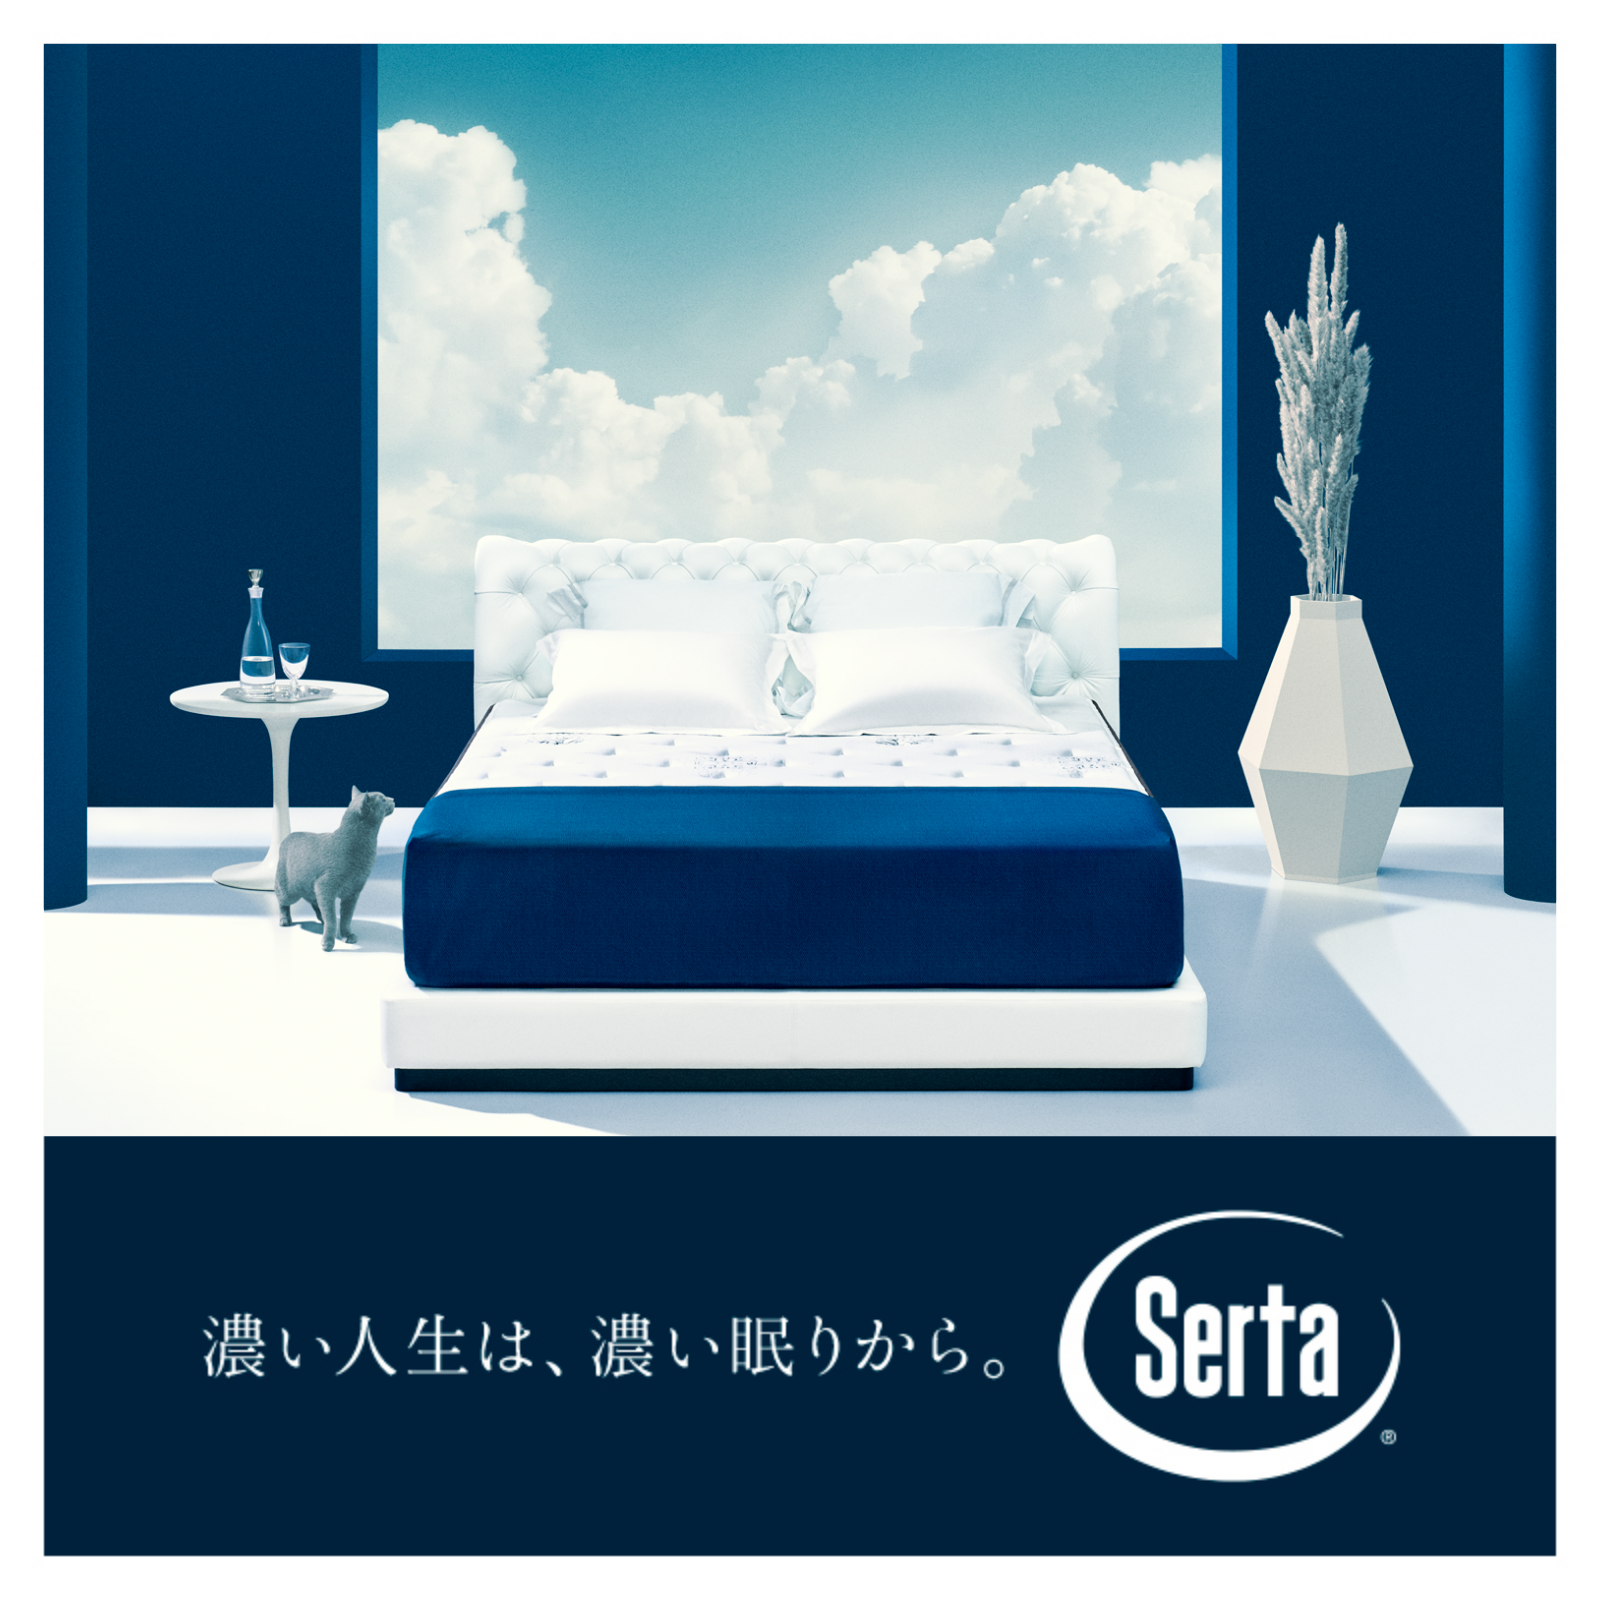 「Serta(サータ)  」夫婦円満を願い開発｜一緒のベッドに、２つの寝心地が選べる「ペアリングツイン®」テレビCMを放送開始｜新婚夫婦の5組に1組が、ダブルベッドが原因でケンカをしている実態を受けのサブ画像13